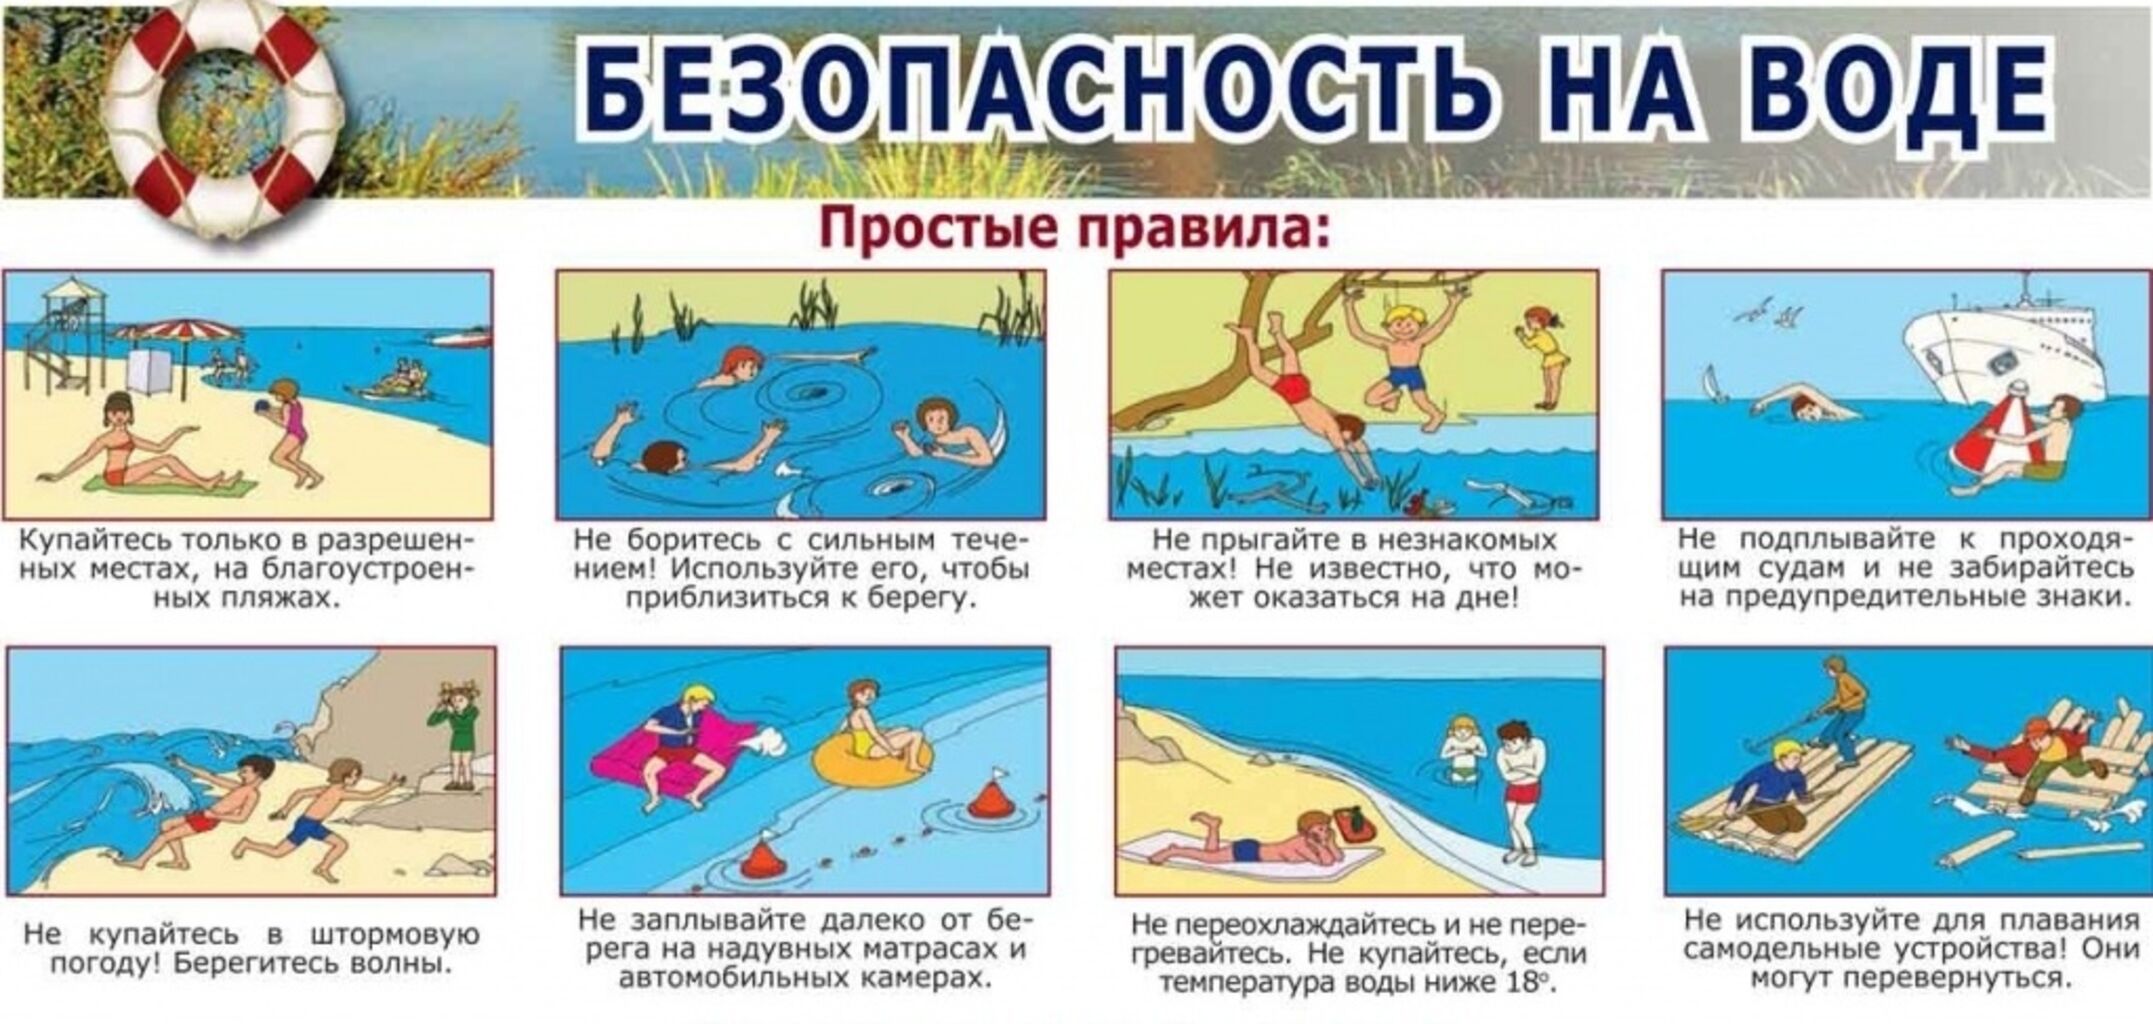 Безопасность на воде летом